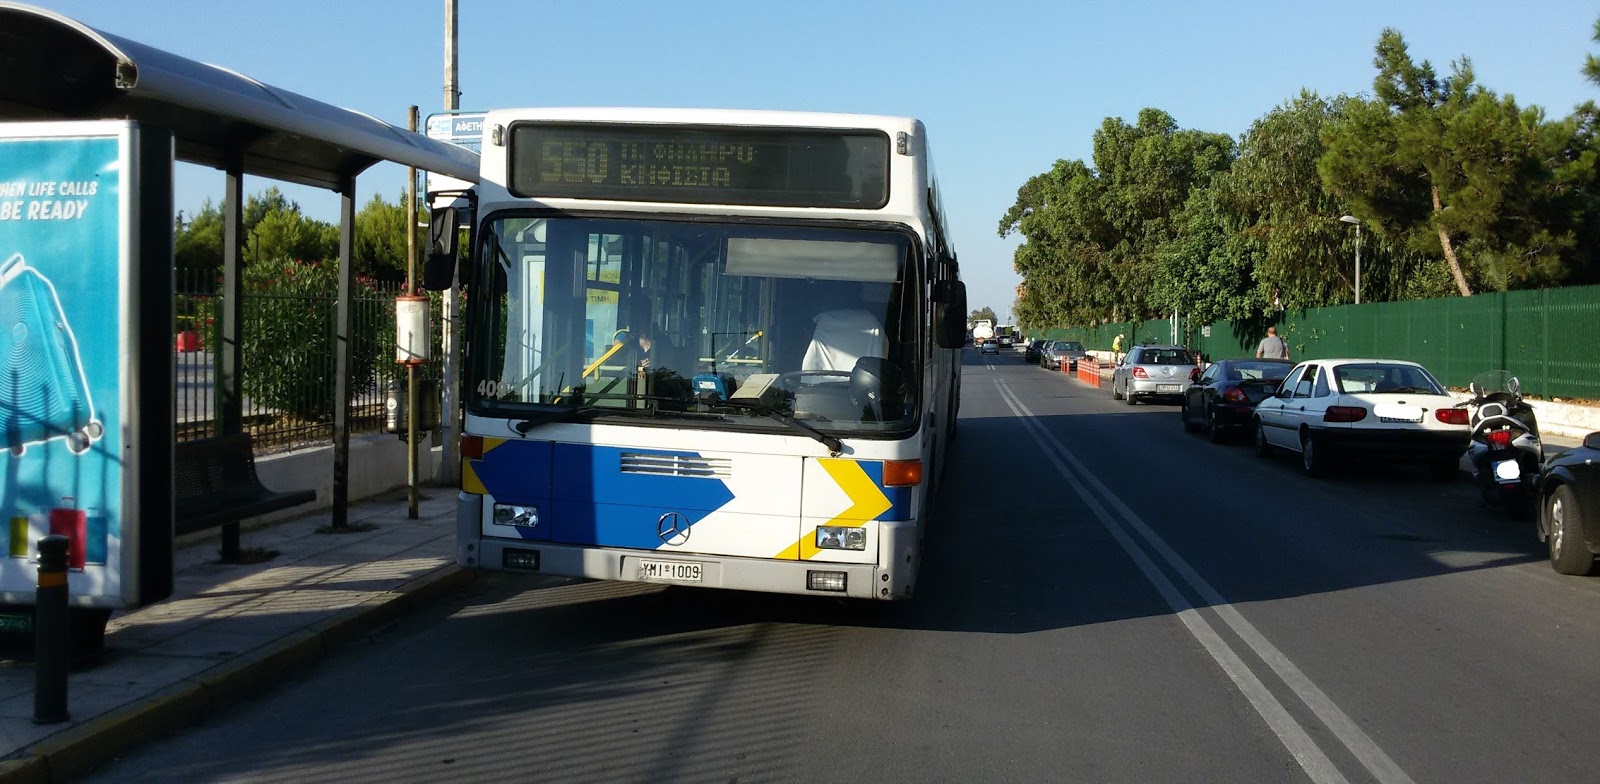 Citybus drivers: Διπλή διαχωριστική γραμμή στην Αφετηρία της λεωφ. γραμμής 550 !!!